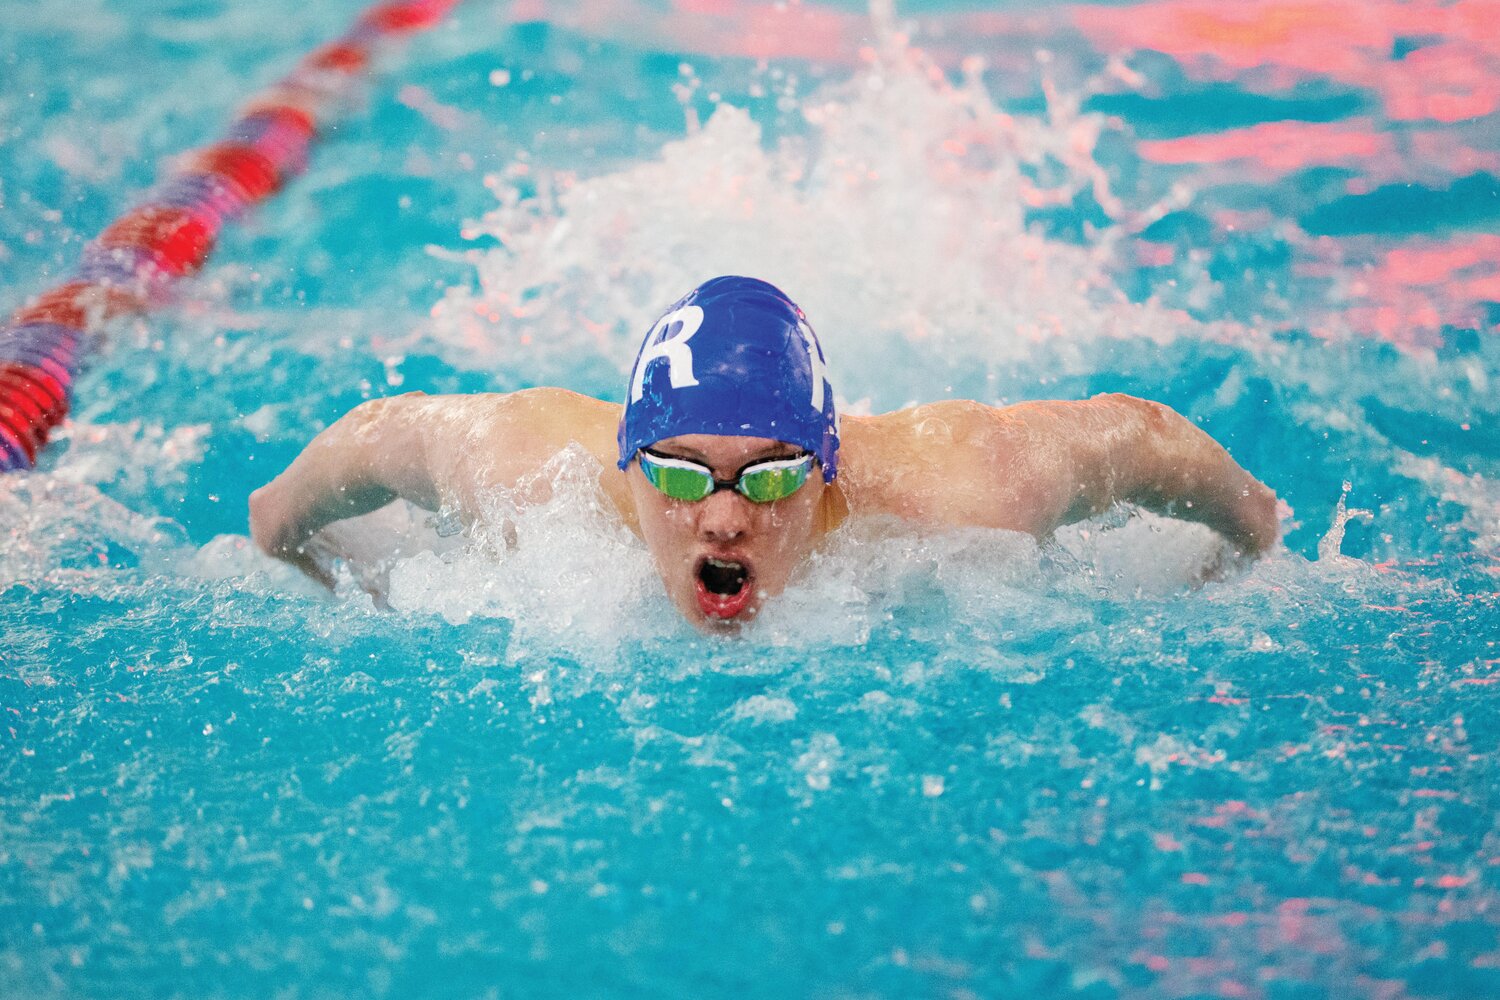 Kajfosz looks to finish swim season strong